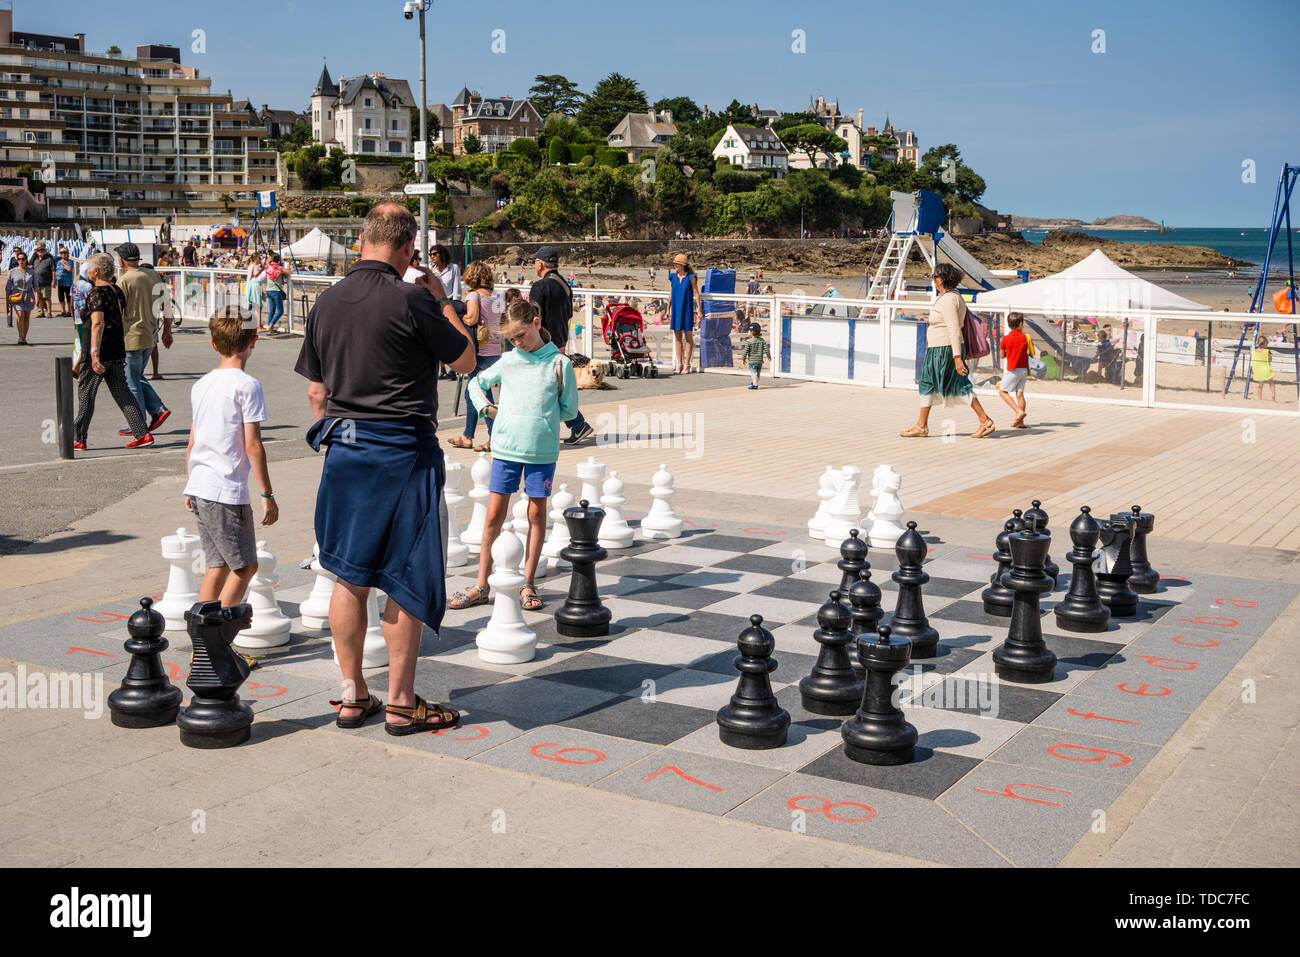 Son père et ses deux jeunes enfants jouer jeu d'échecs géant dans la station balnéaire de Dinard, Bretagne, France Banque D'Images